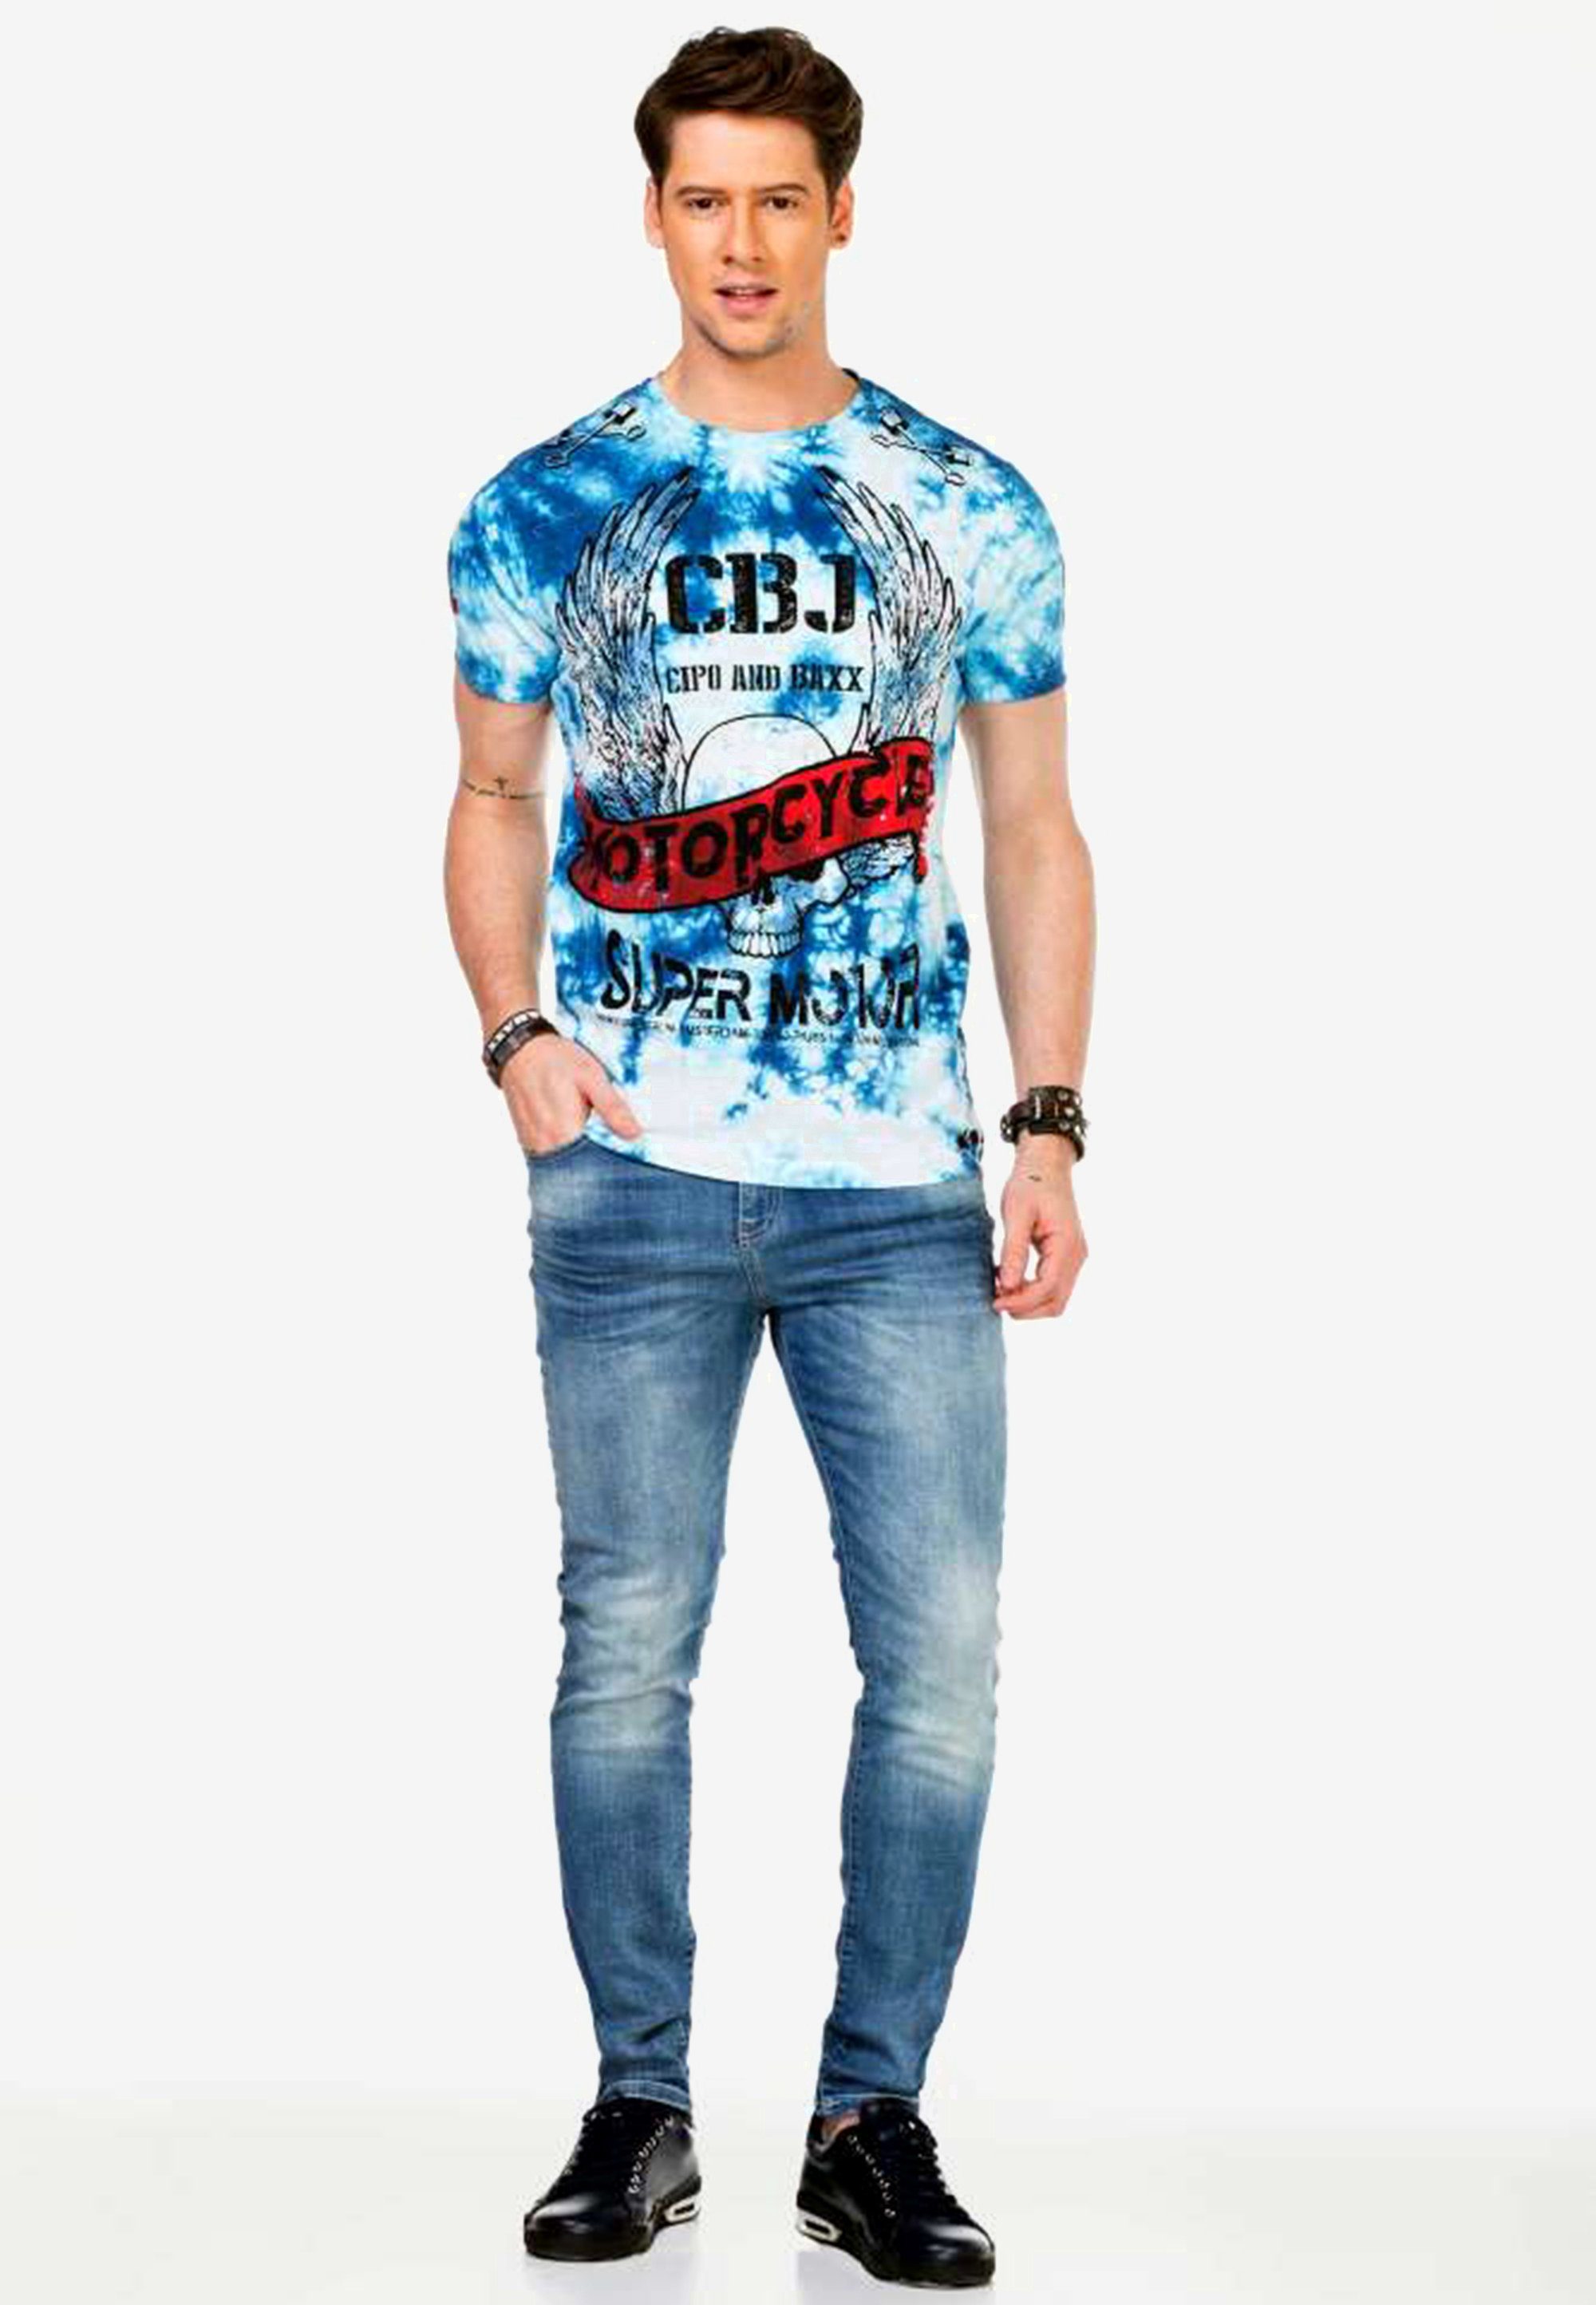 mit Motorcycle-Prints Cipo blau & coolen Baxx T-Shirt